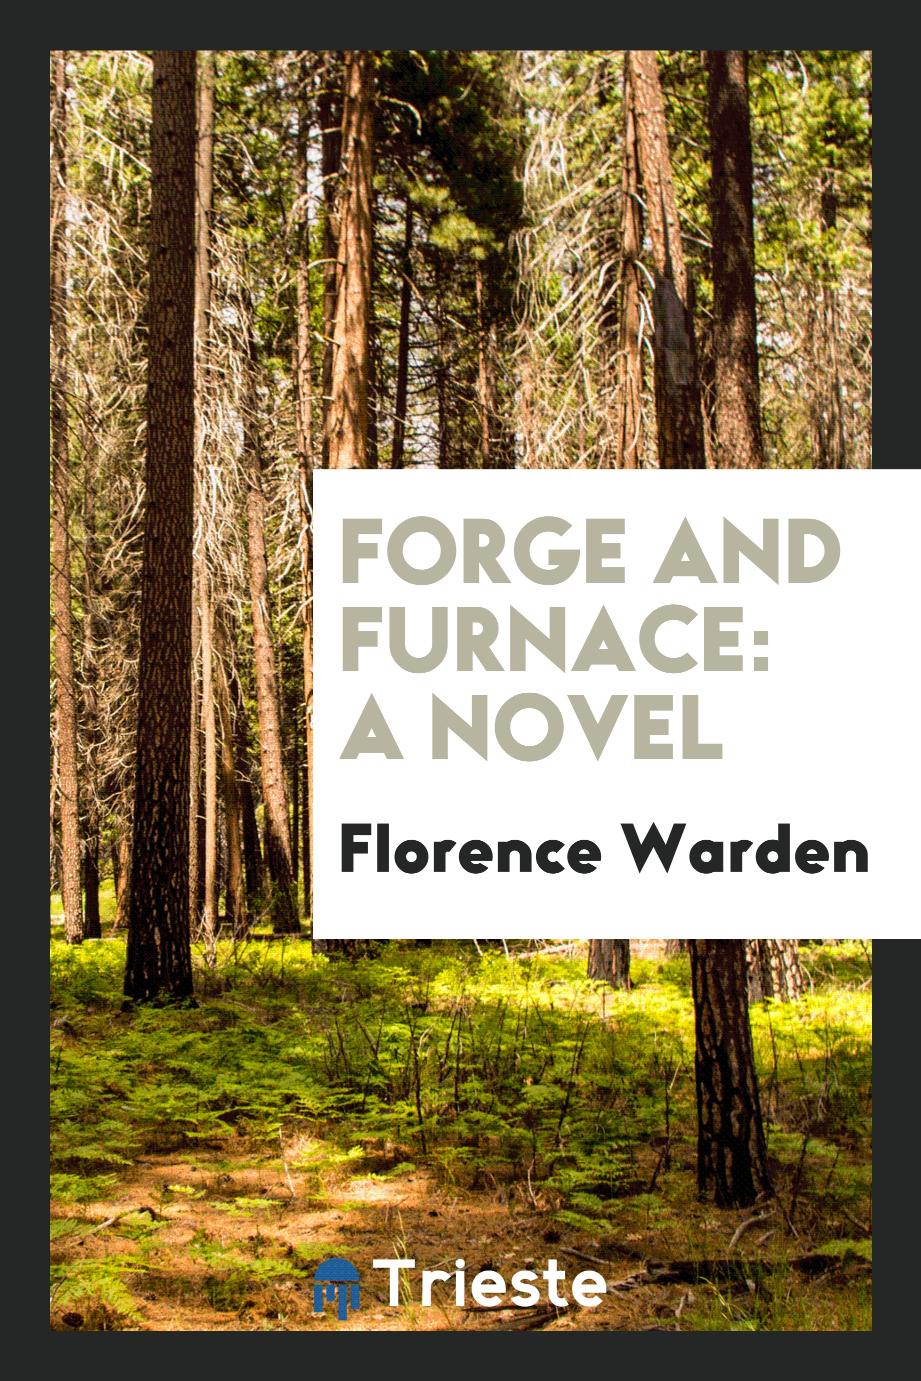 Forge and Furnace: A Novel